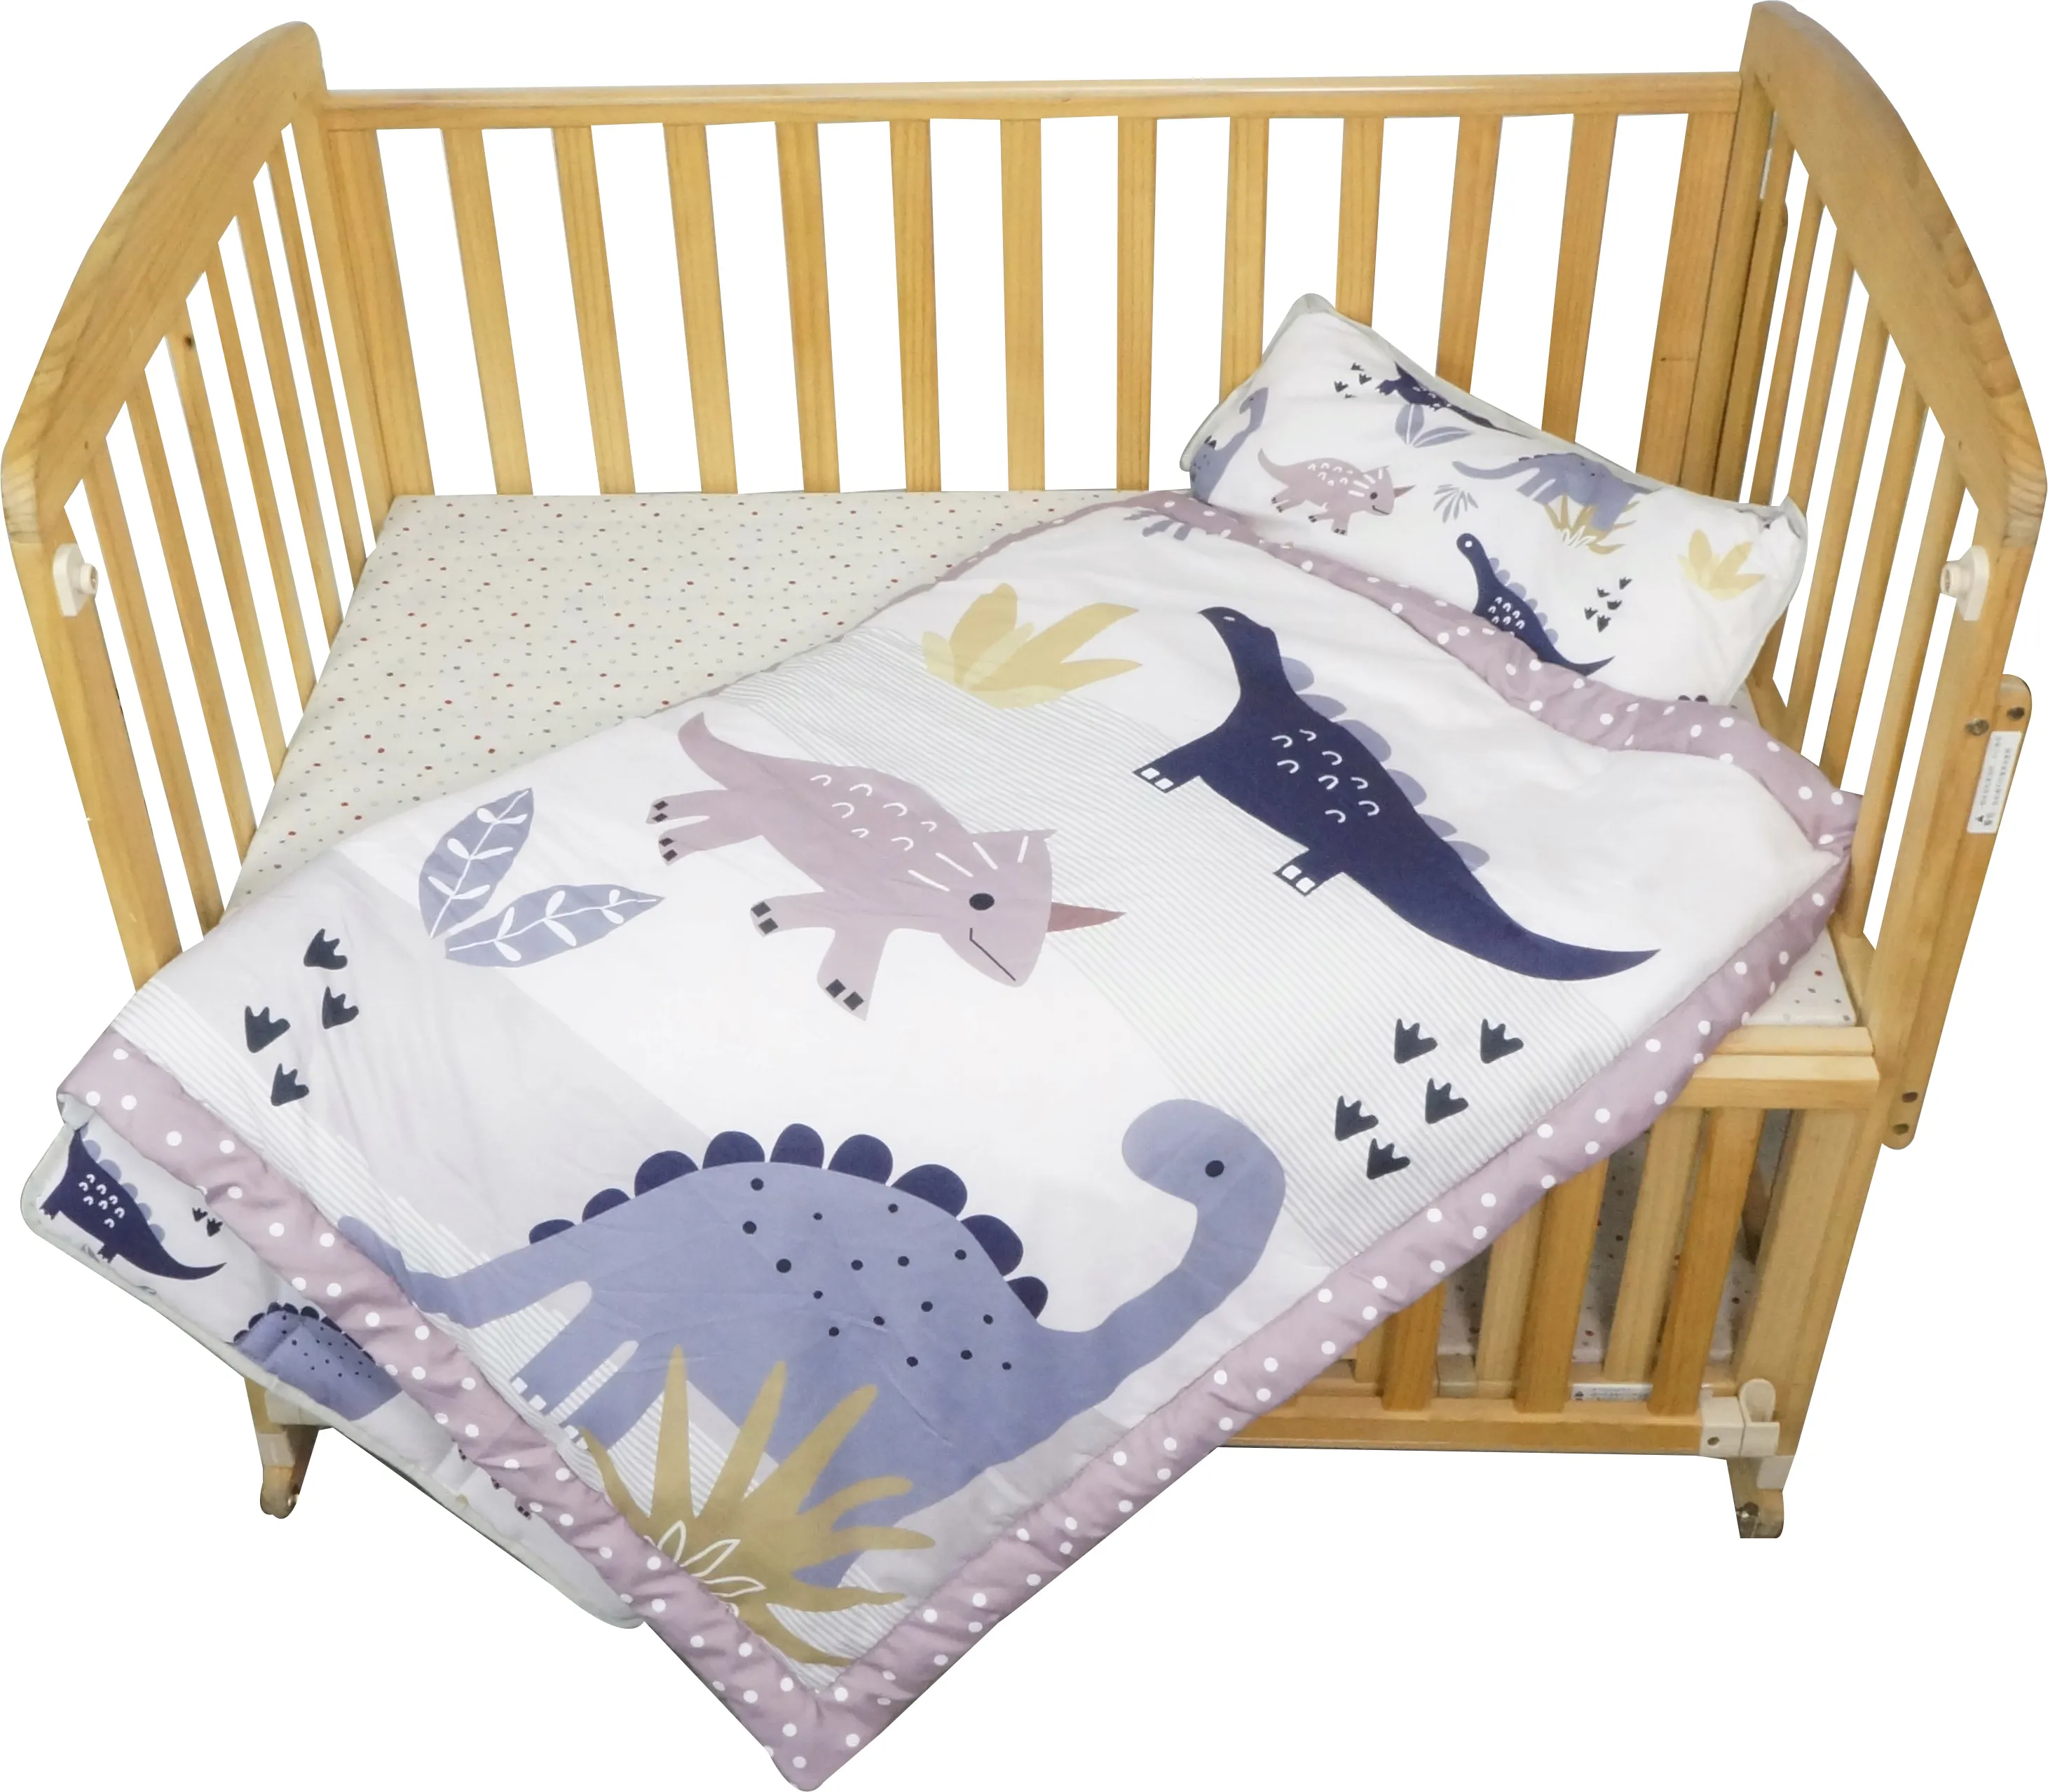 Nap Mat mit abnehmbarem Kissen Kleinkind Nap Mat Bettdecke für Babys, Kinder, Jungen, Mädchen, die Tag oder Nacht schlafen